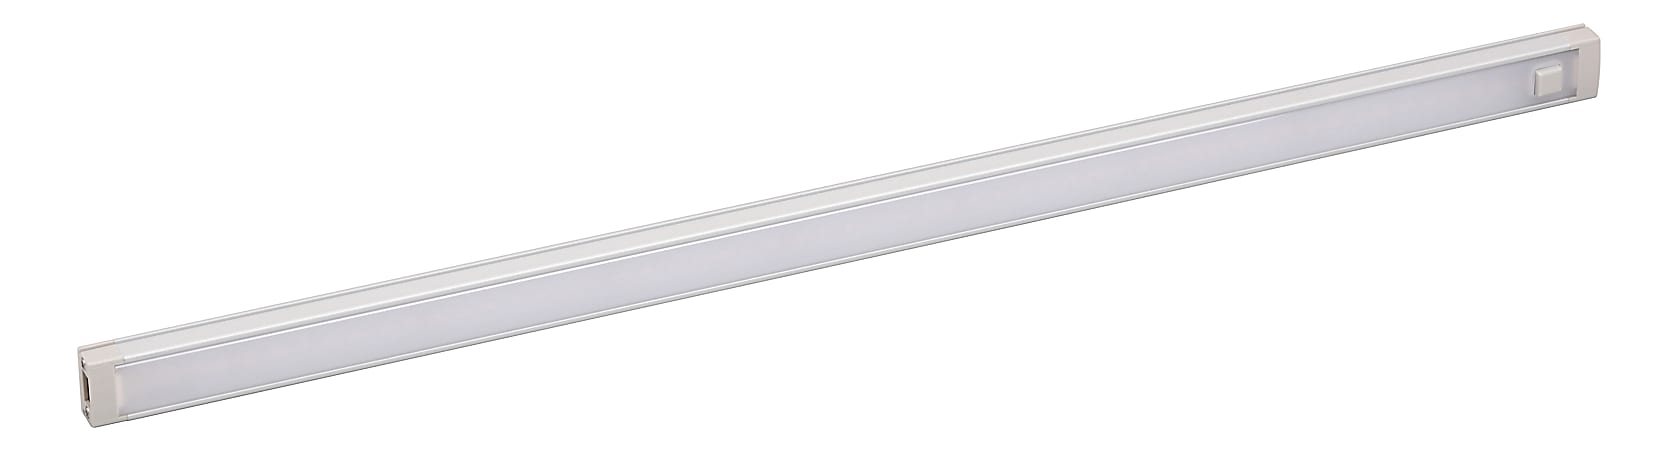 Black+Decker 1-Bar Under-Cabinet LED Lighting Kit, 18", Cool White